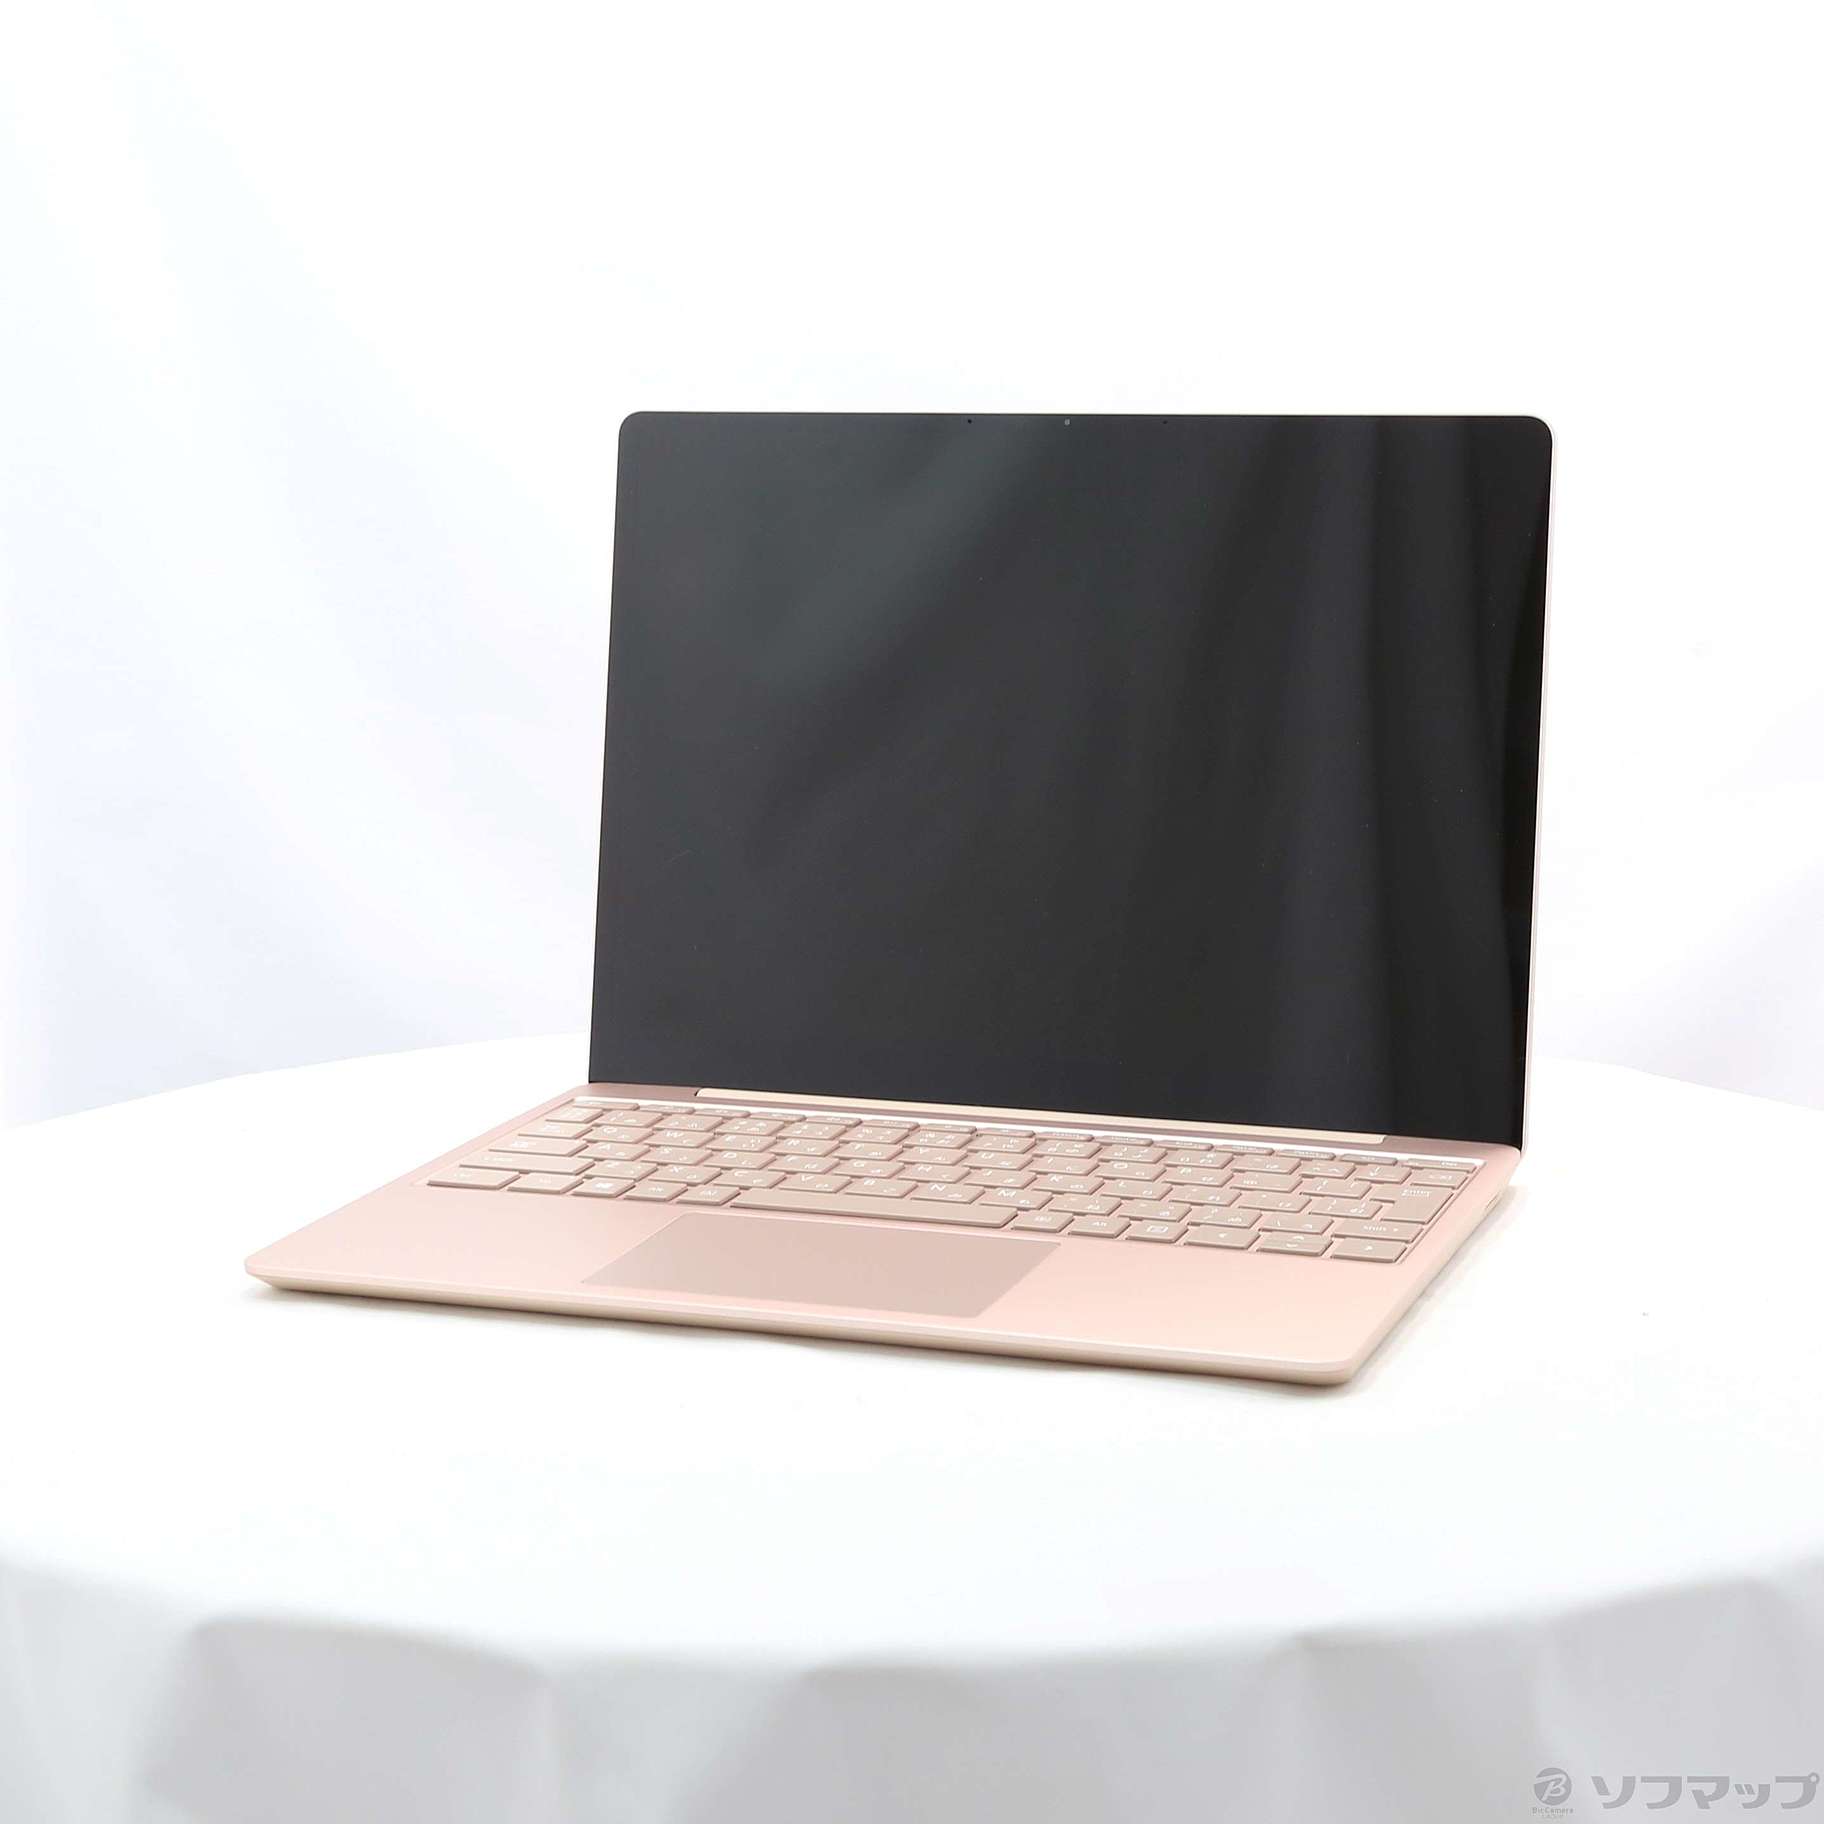 〔展示品〕 Surface Laptop Go 〔Core i5／8GB／SSD128GB〕 THH-00045 サンドストーン